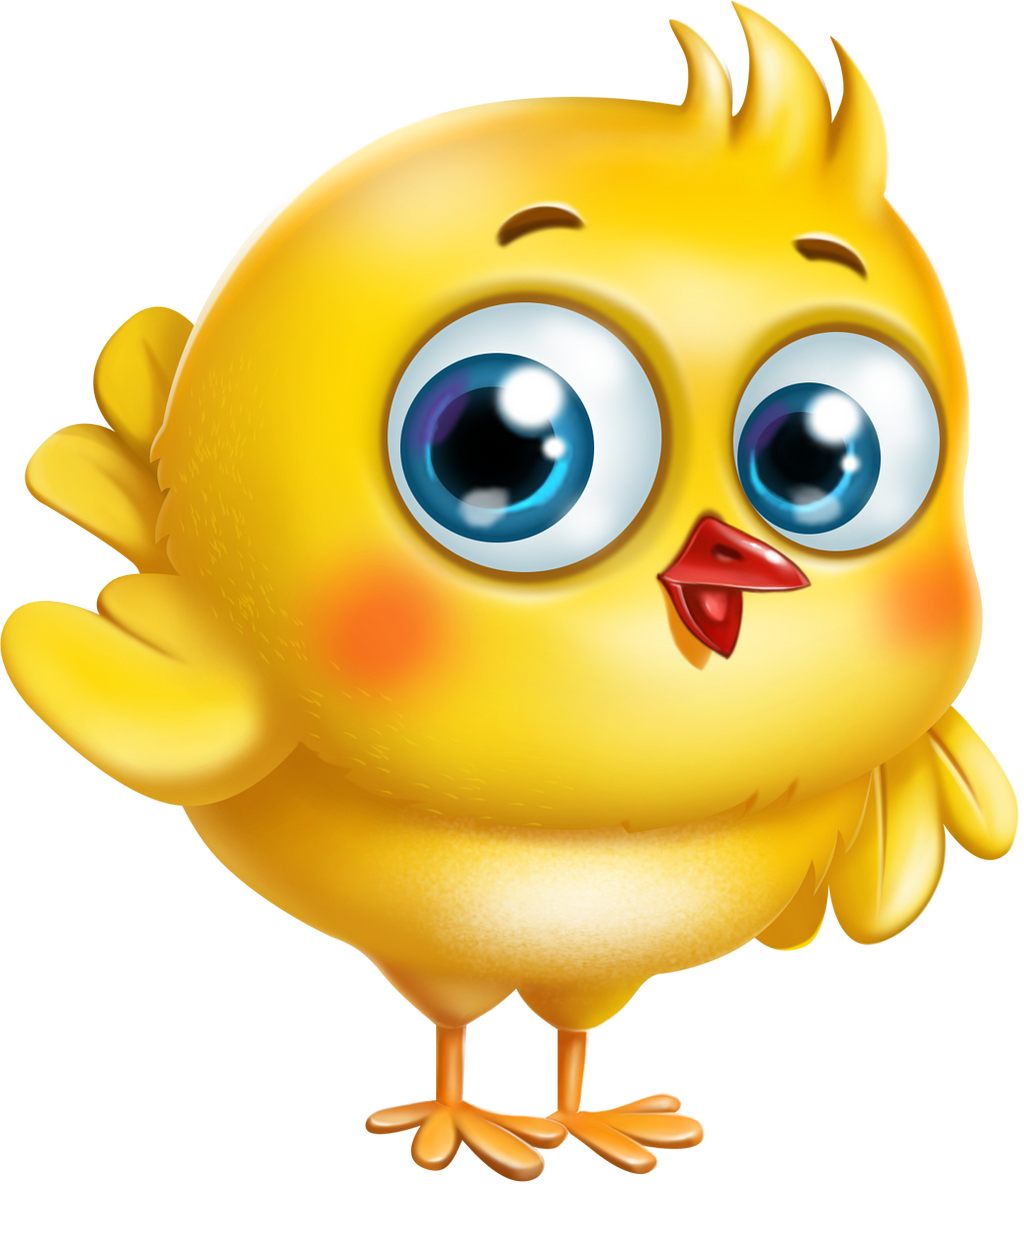 happy-chicken